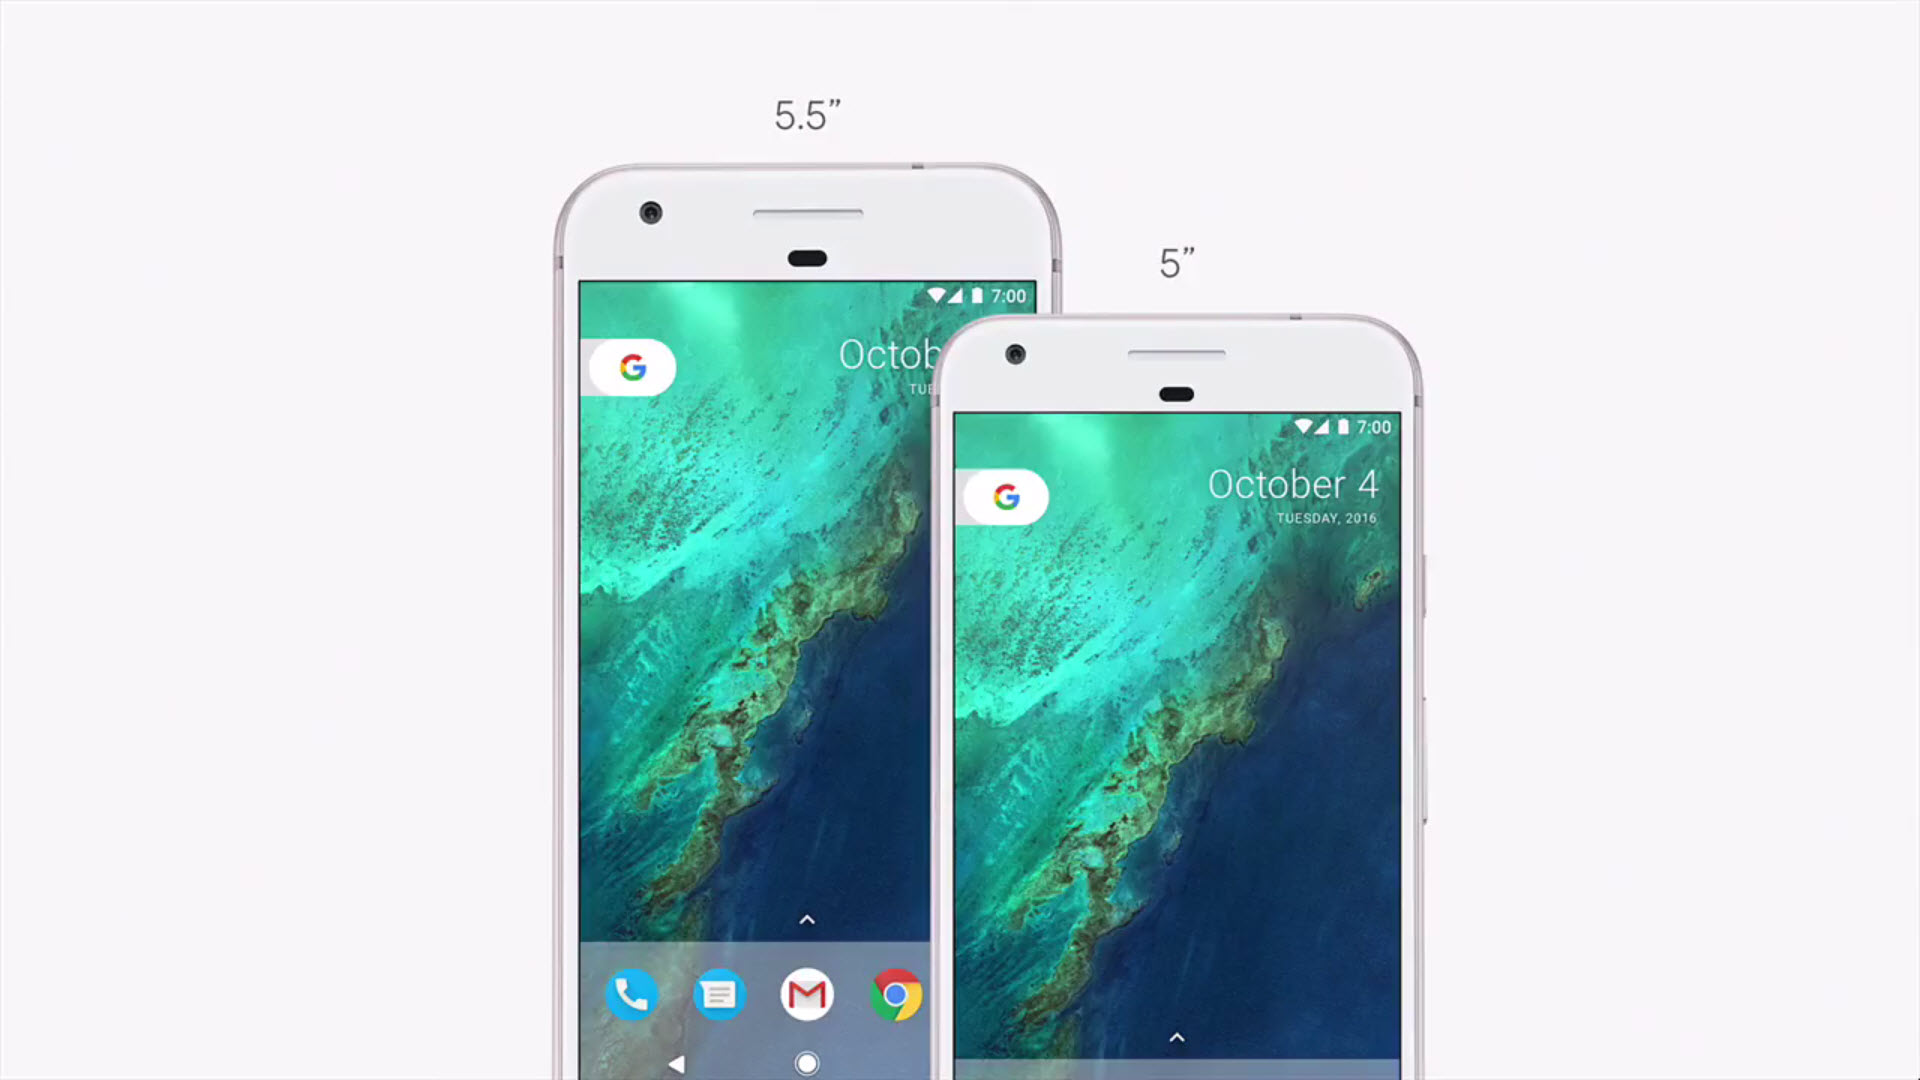 ผลทดสอบเผย Google Pixel ได้คะแนนความแรงน้อยกว่า iPhone SE ซะงั้น!